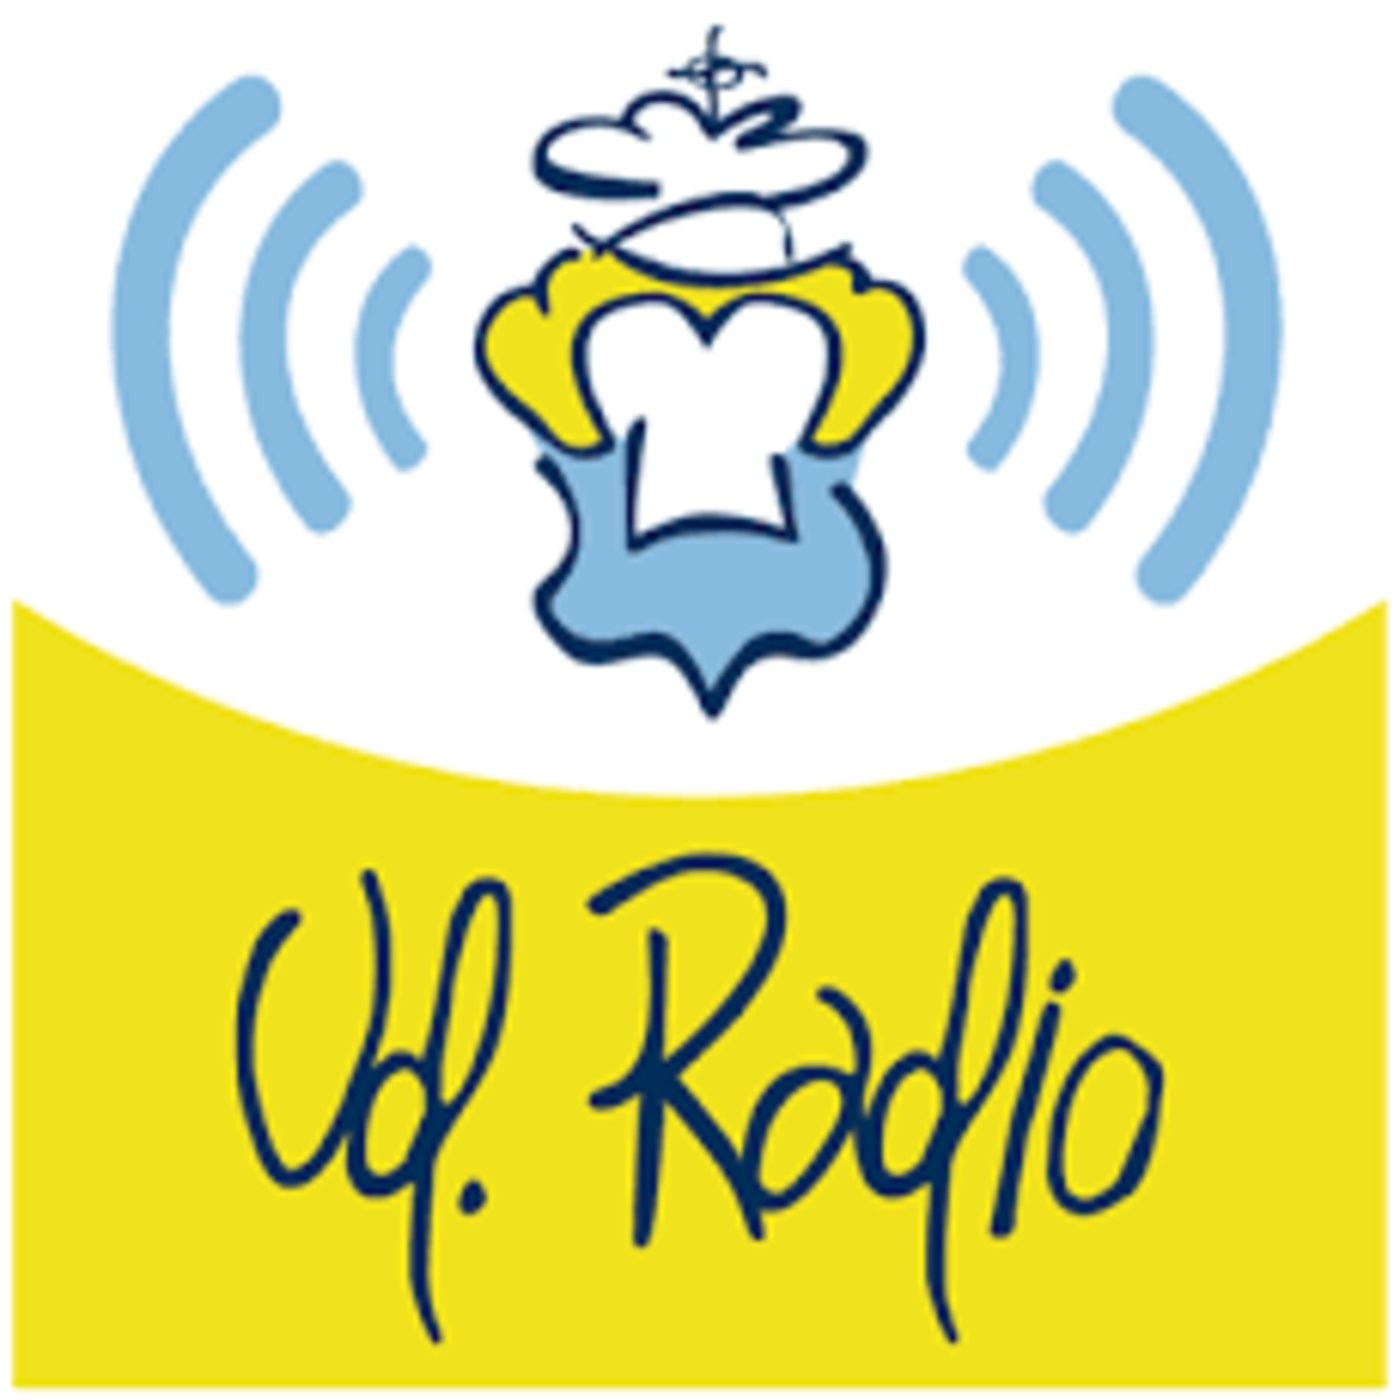 Cada semana Aplicado Una buena amiga UD RADIO - Podcast en iVoox